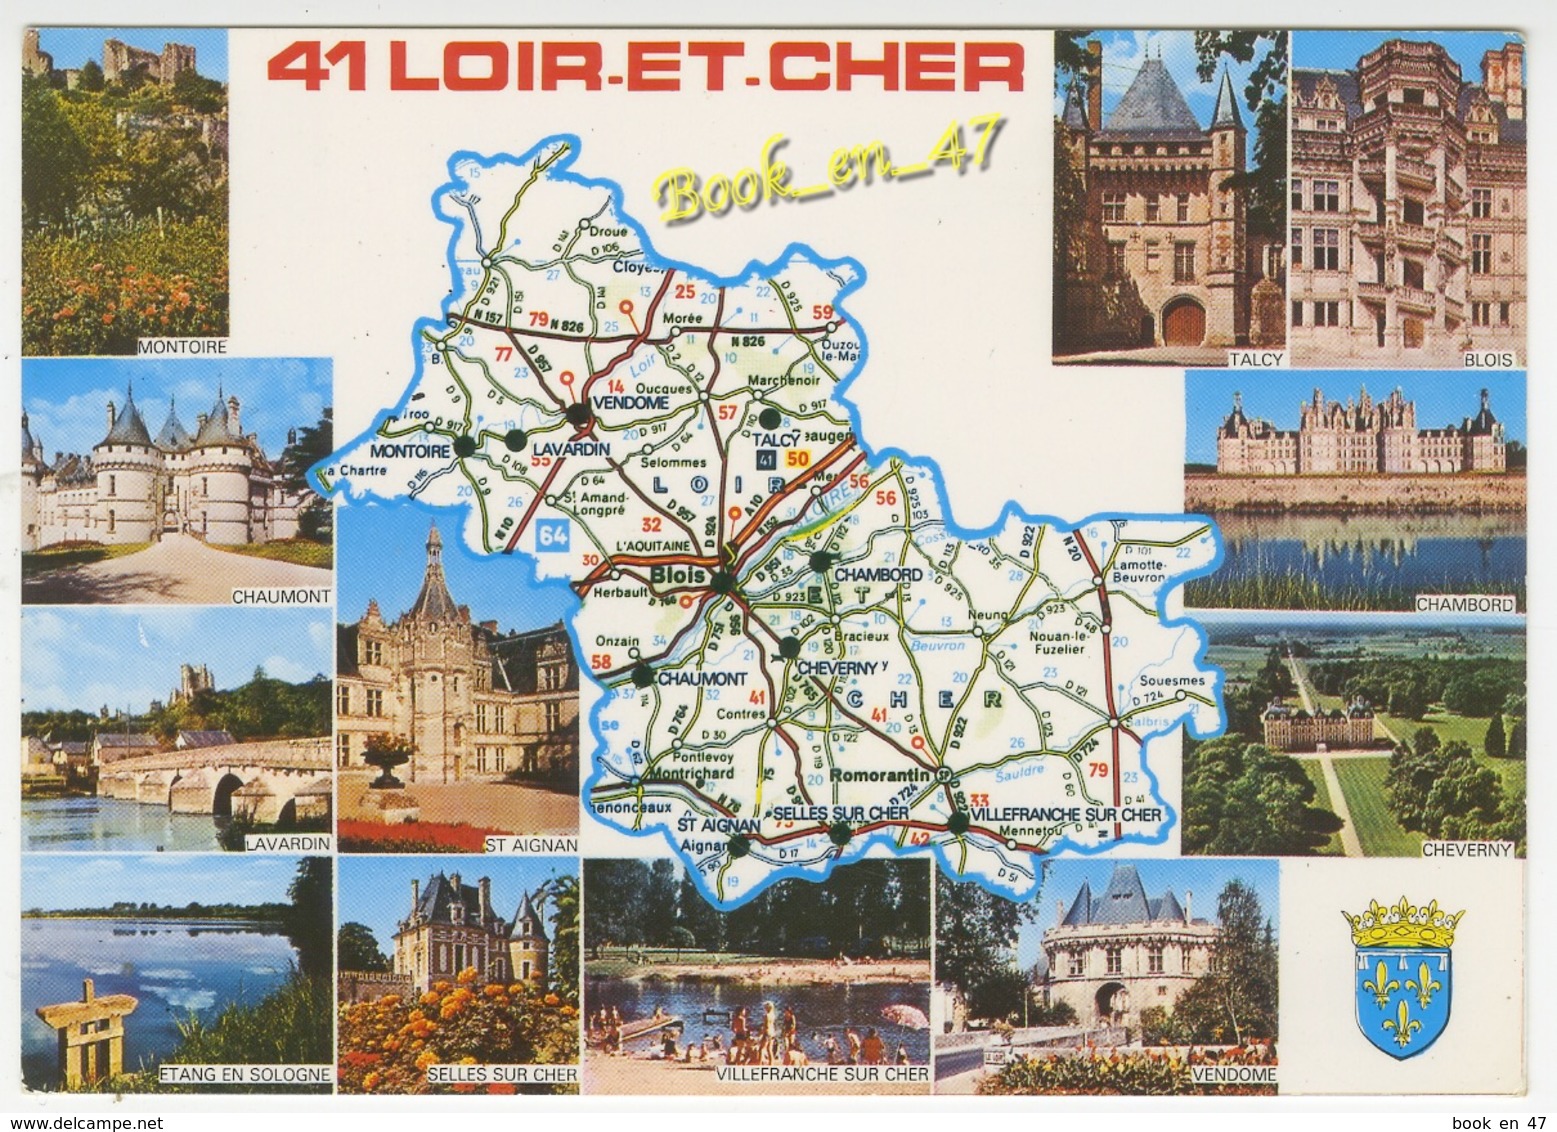 {78594} 41 Loir Et Cher , Carte Et Multivues ; Montoire , Chaumont , Talcy , Blois , Vendôme , Cheverny , Chambord - Cartes Géographiques